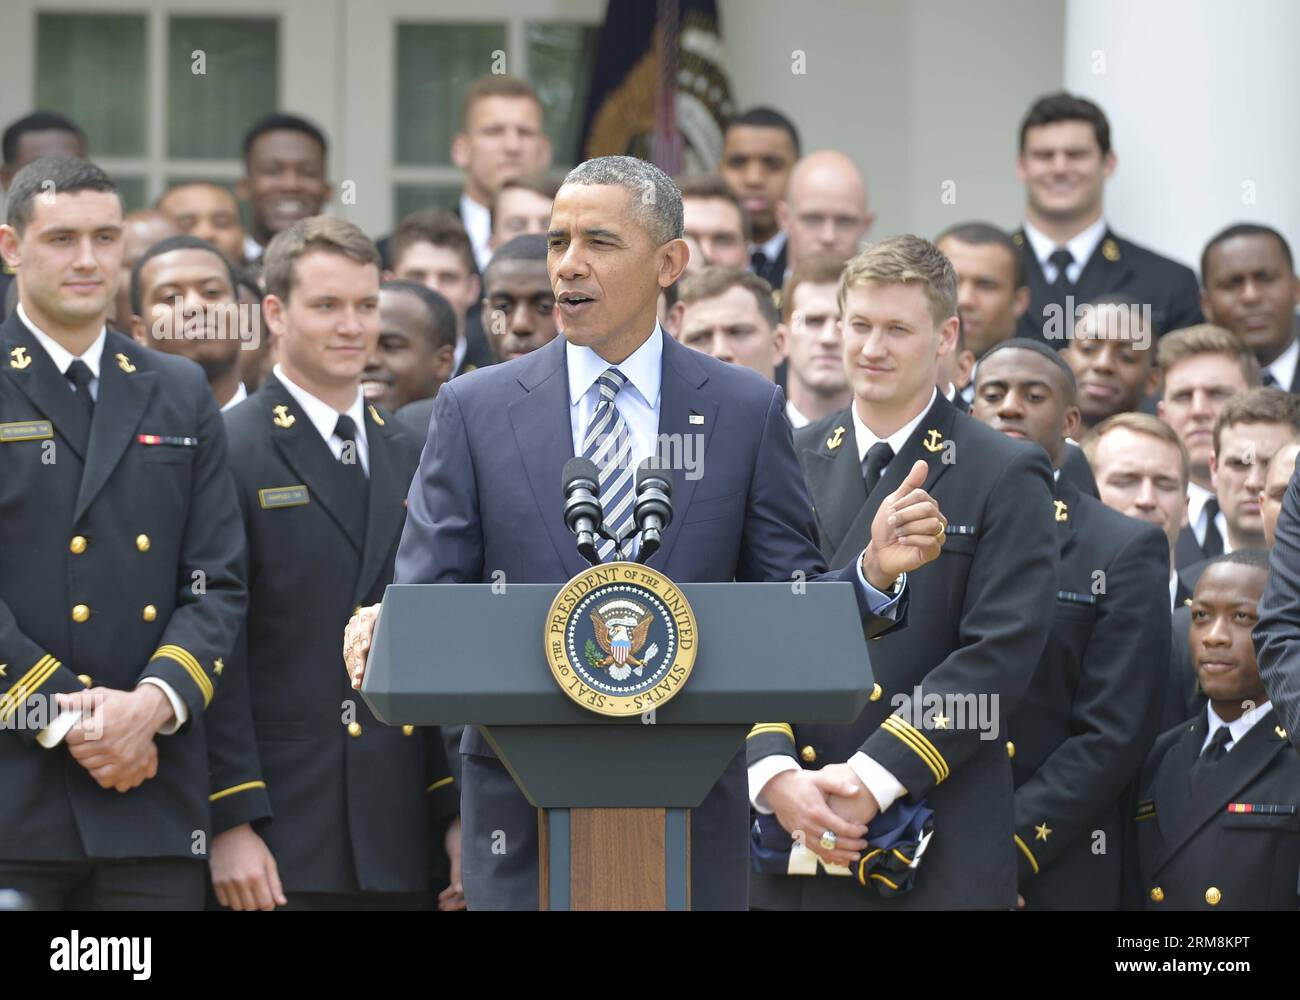 Le président AMÉRICAIN Barack Obama prend la parole lors de la présentation du trophée Commander-in-Chief à l’équipe de football de l’Académie navale américaine à la Maison Blanche à Washington le 18 avril 2014. (Xinhua/Bao Dandan) US-WASHINGTON-OBAMA-NAVY FOOTBALL TEAM PUBLICATIONxNOTxINxCHN le président américain Barack Obama prend la parole lors de la PRÉSENTATION du trophée Commander en chef à l'équipe de football de l'Académie navale américaine de football À la Maison Blanche à Washington avril 18 2014 XINHUA Bao Dandan U.S. Washington Obama Navy football team PUBLICATIONxNOTxINxINxCHN Banque D'Images